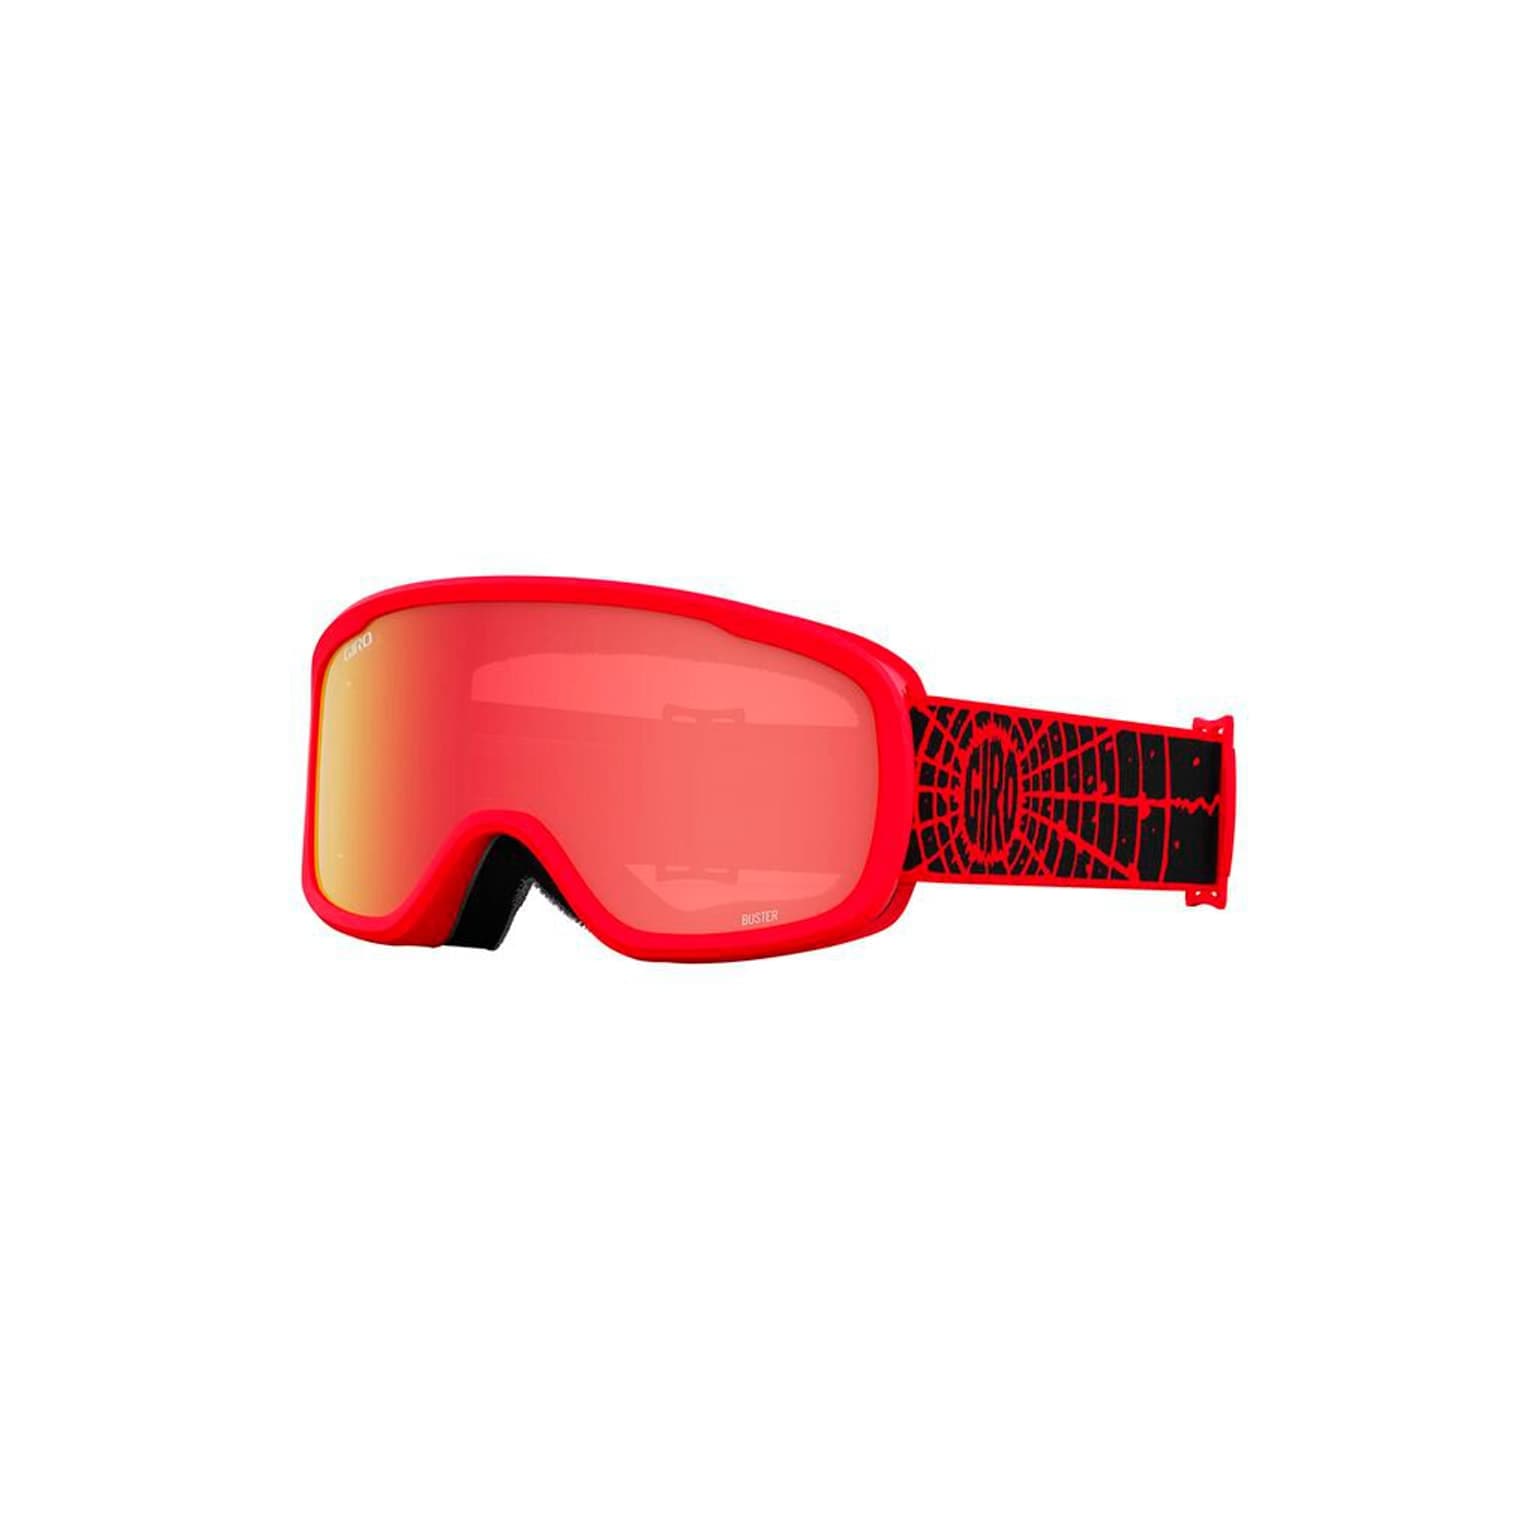 Giro Giro Buster Flash Goggle Masque de ski rouge-fonce 1